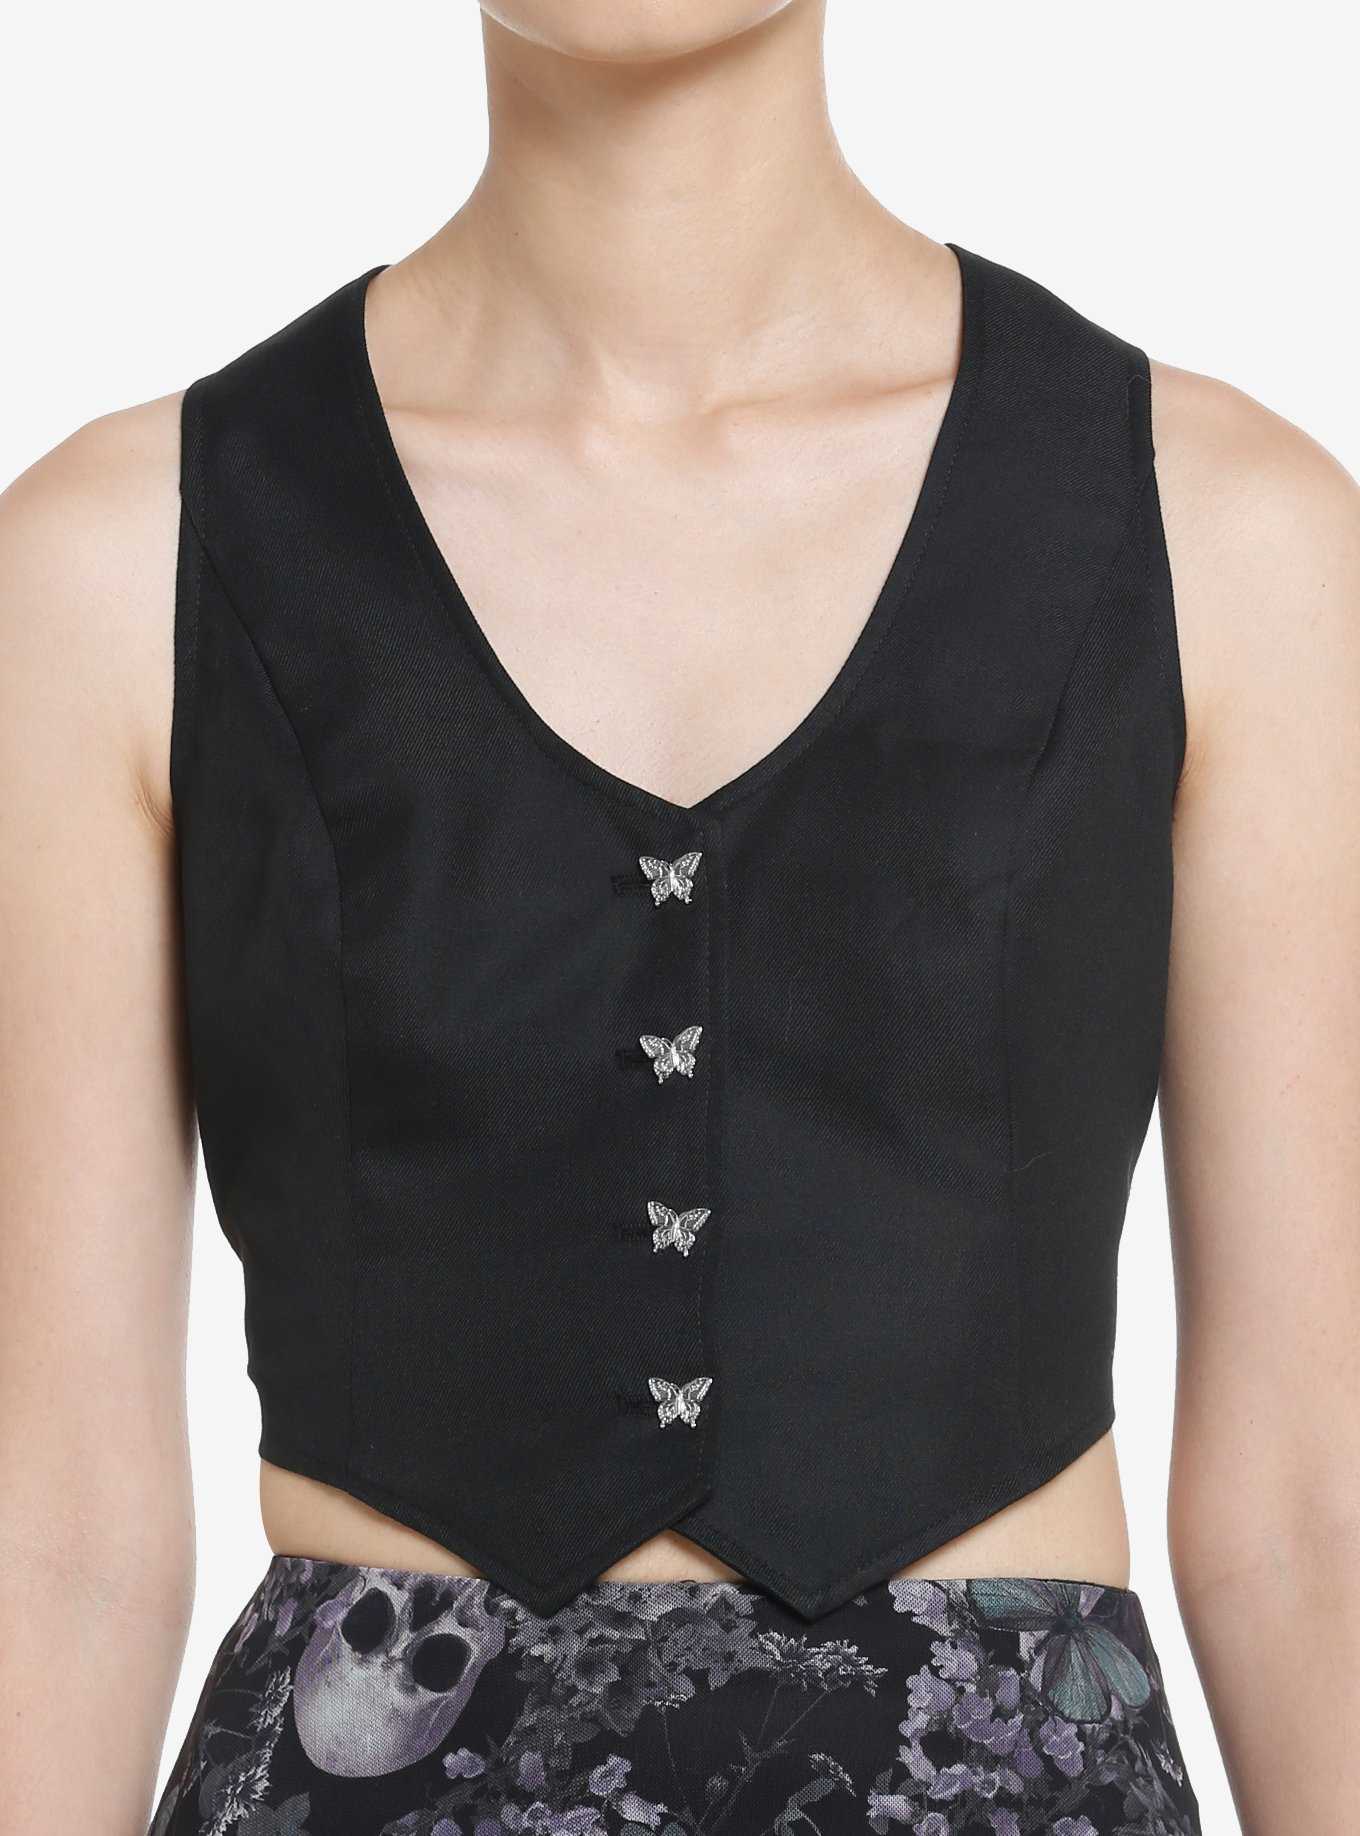 Thorn & Fable Black Lace Back Girls Vest, , hi-res